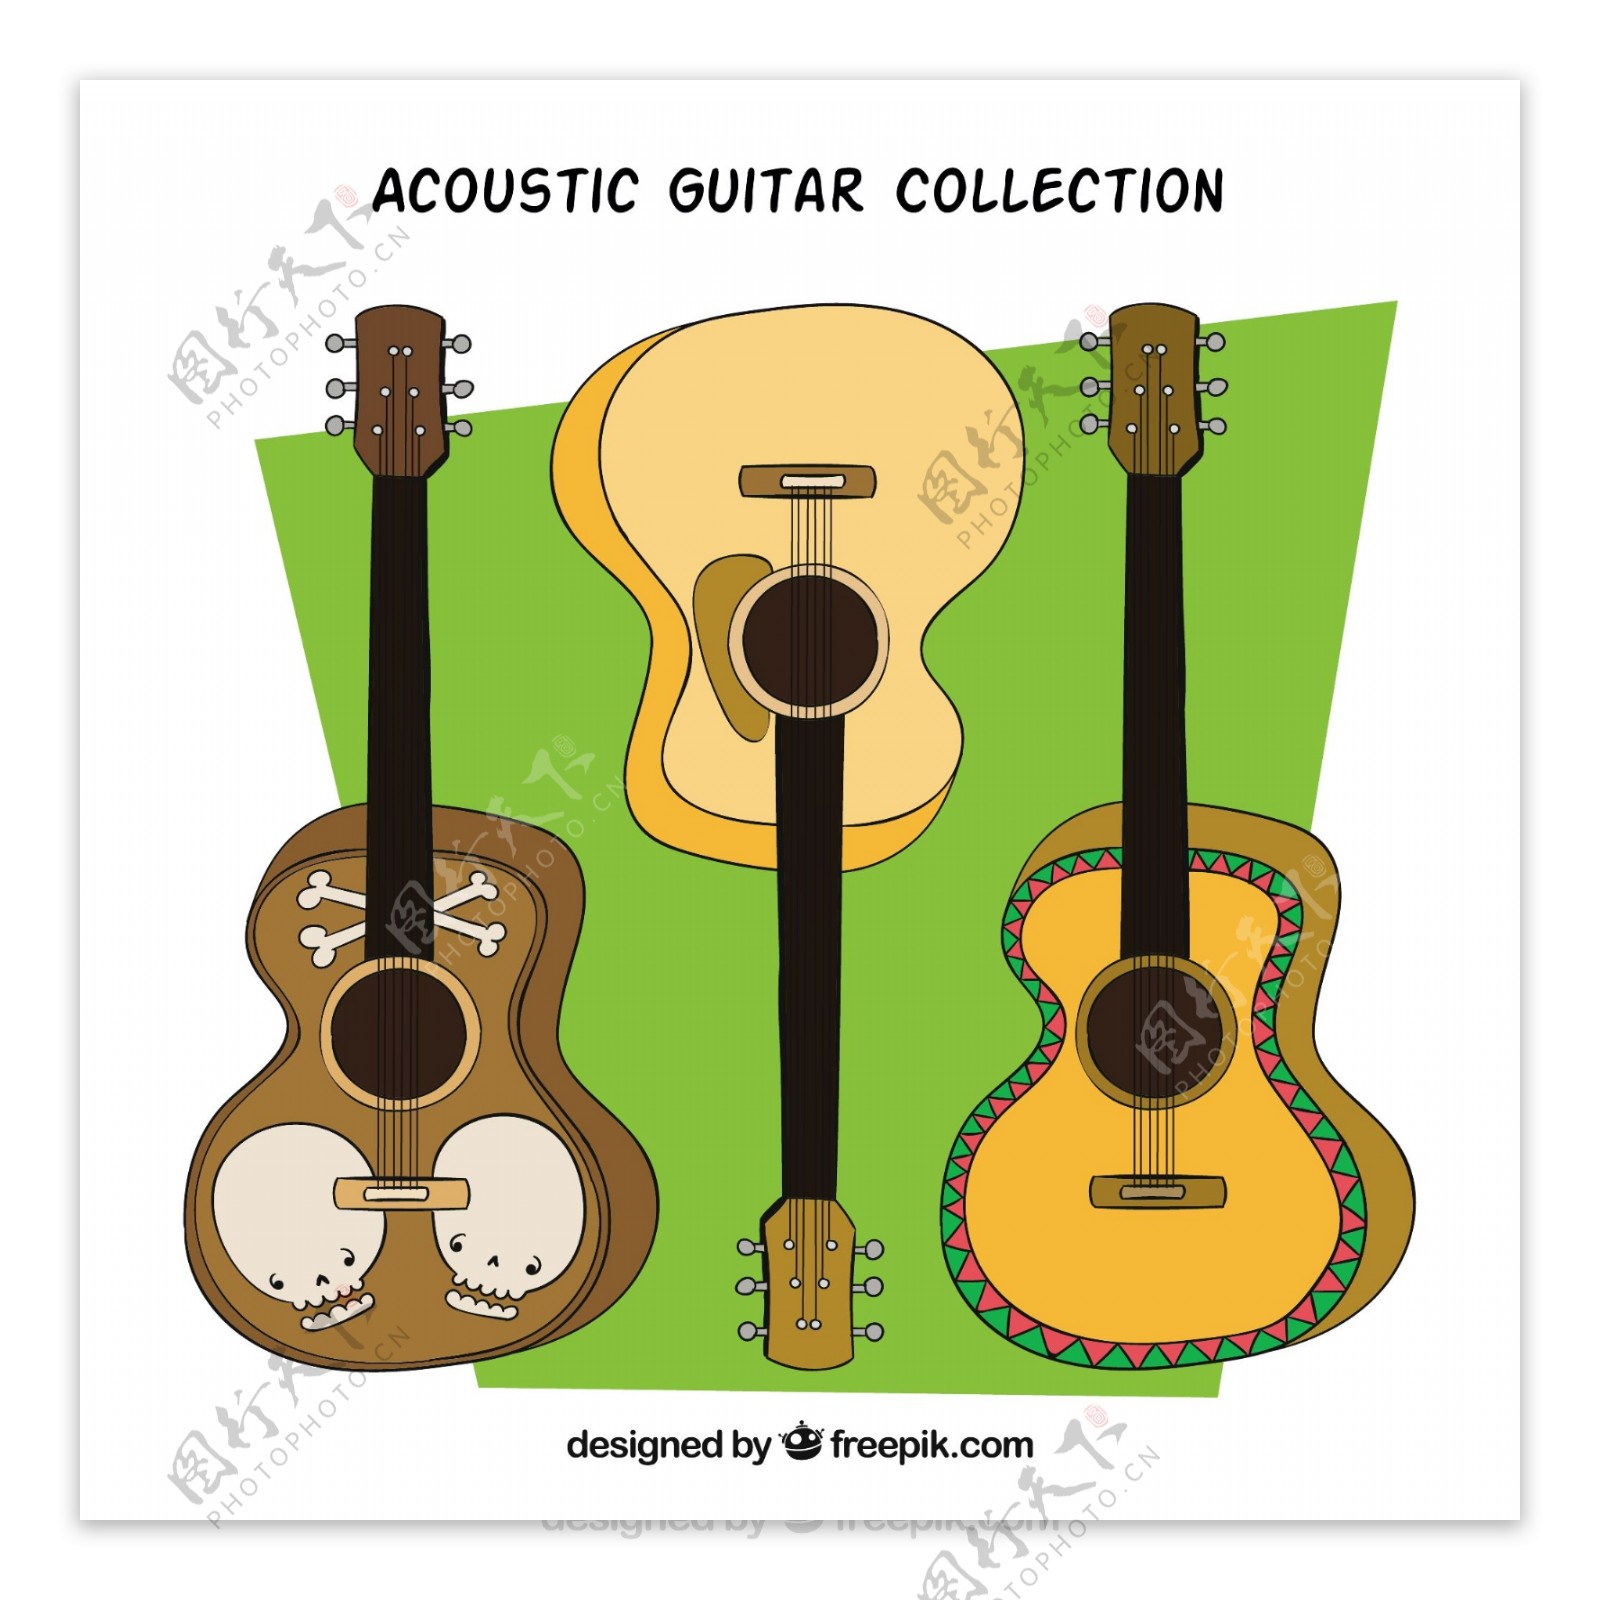 手绘绿色背景三个不同的吉他矢量素材